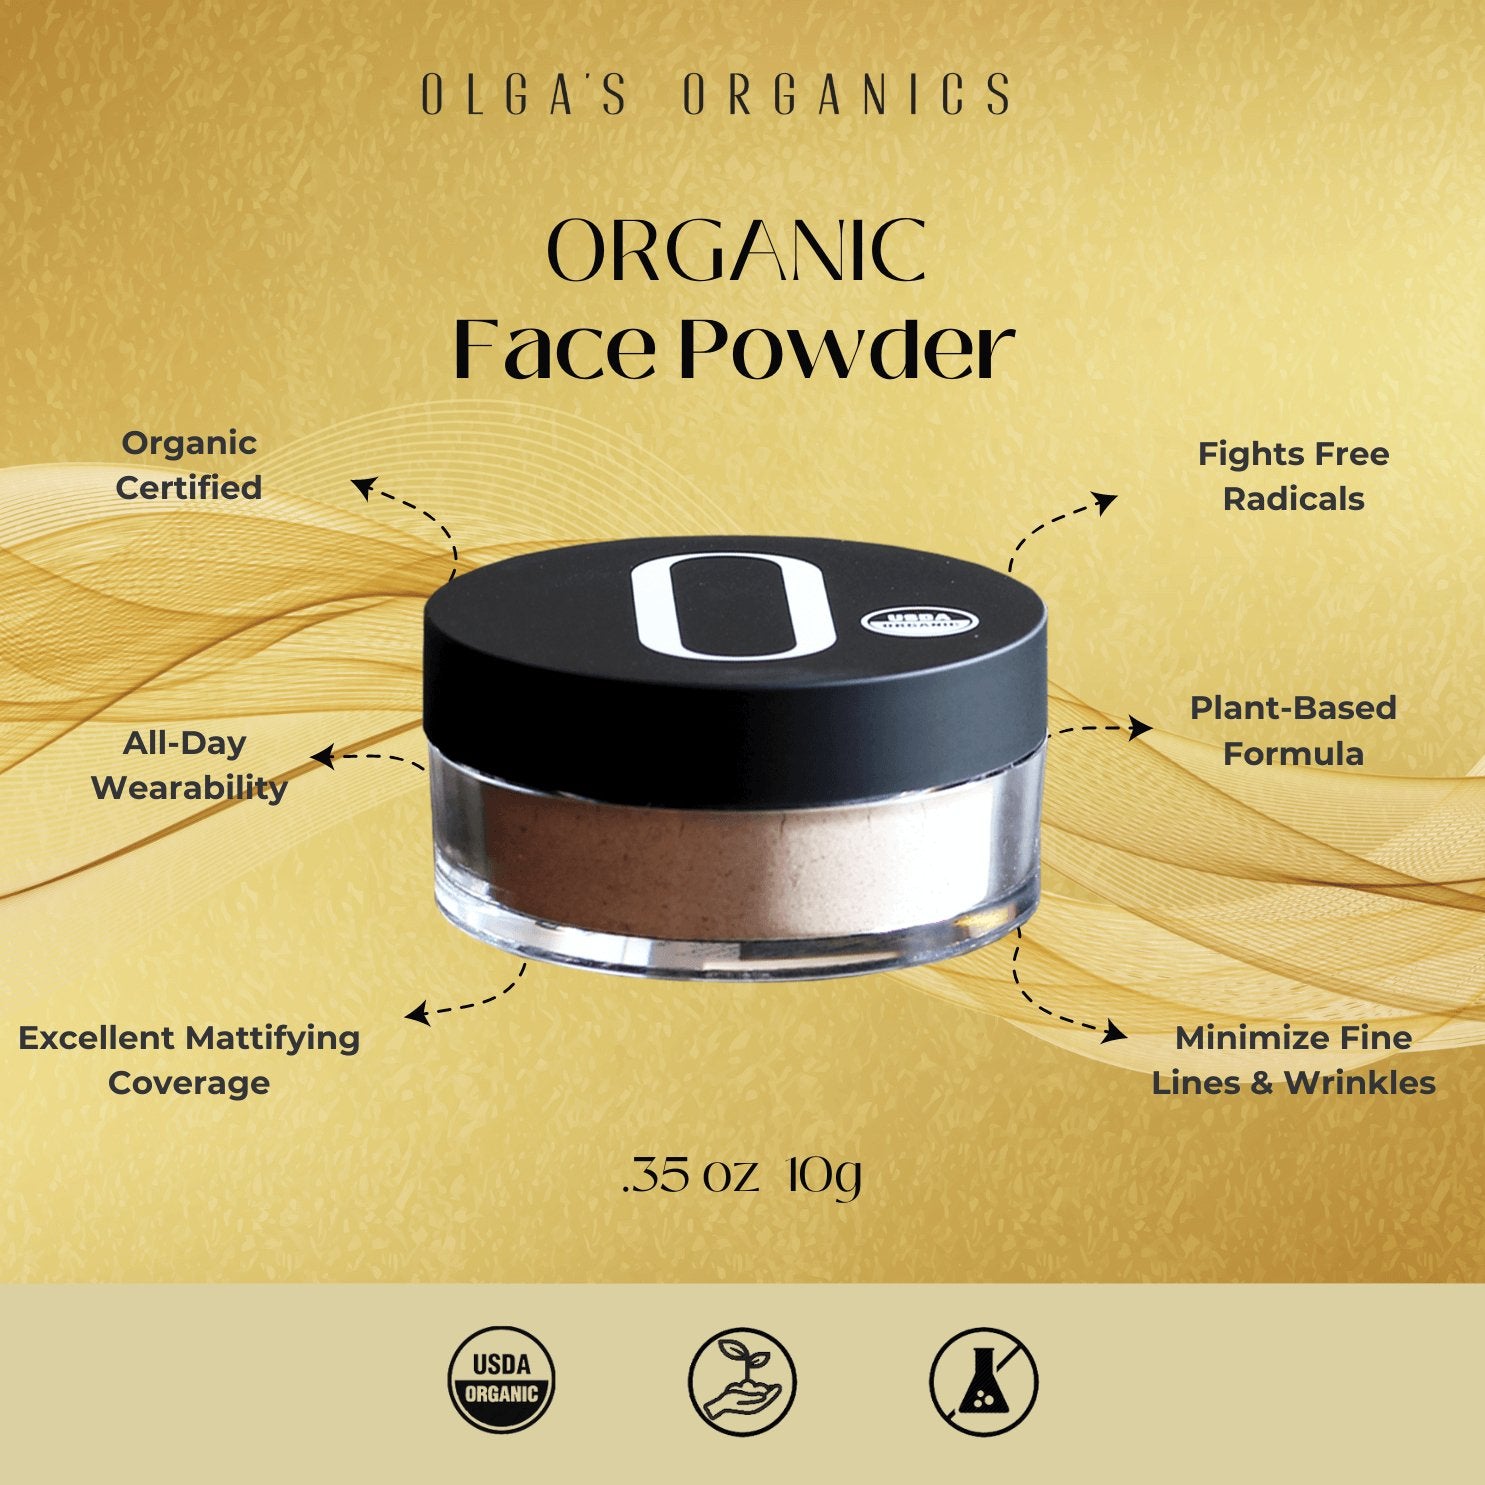 Organic Face Powder - Olga's Organics